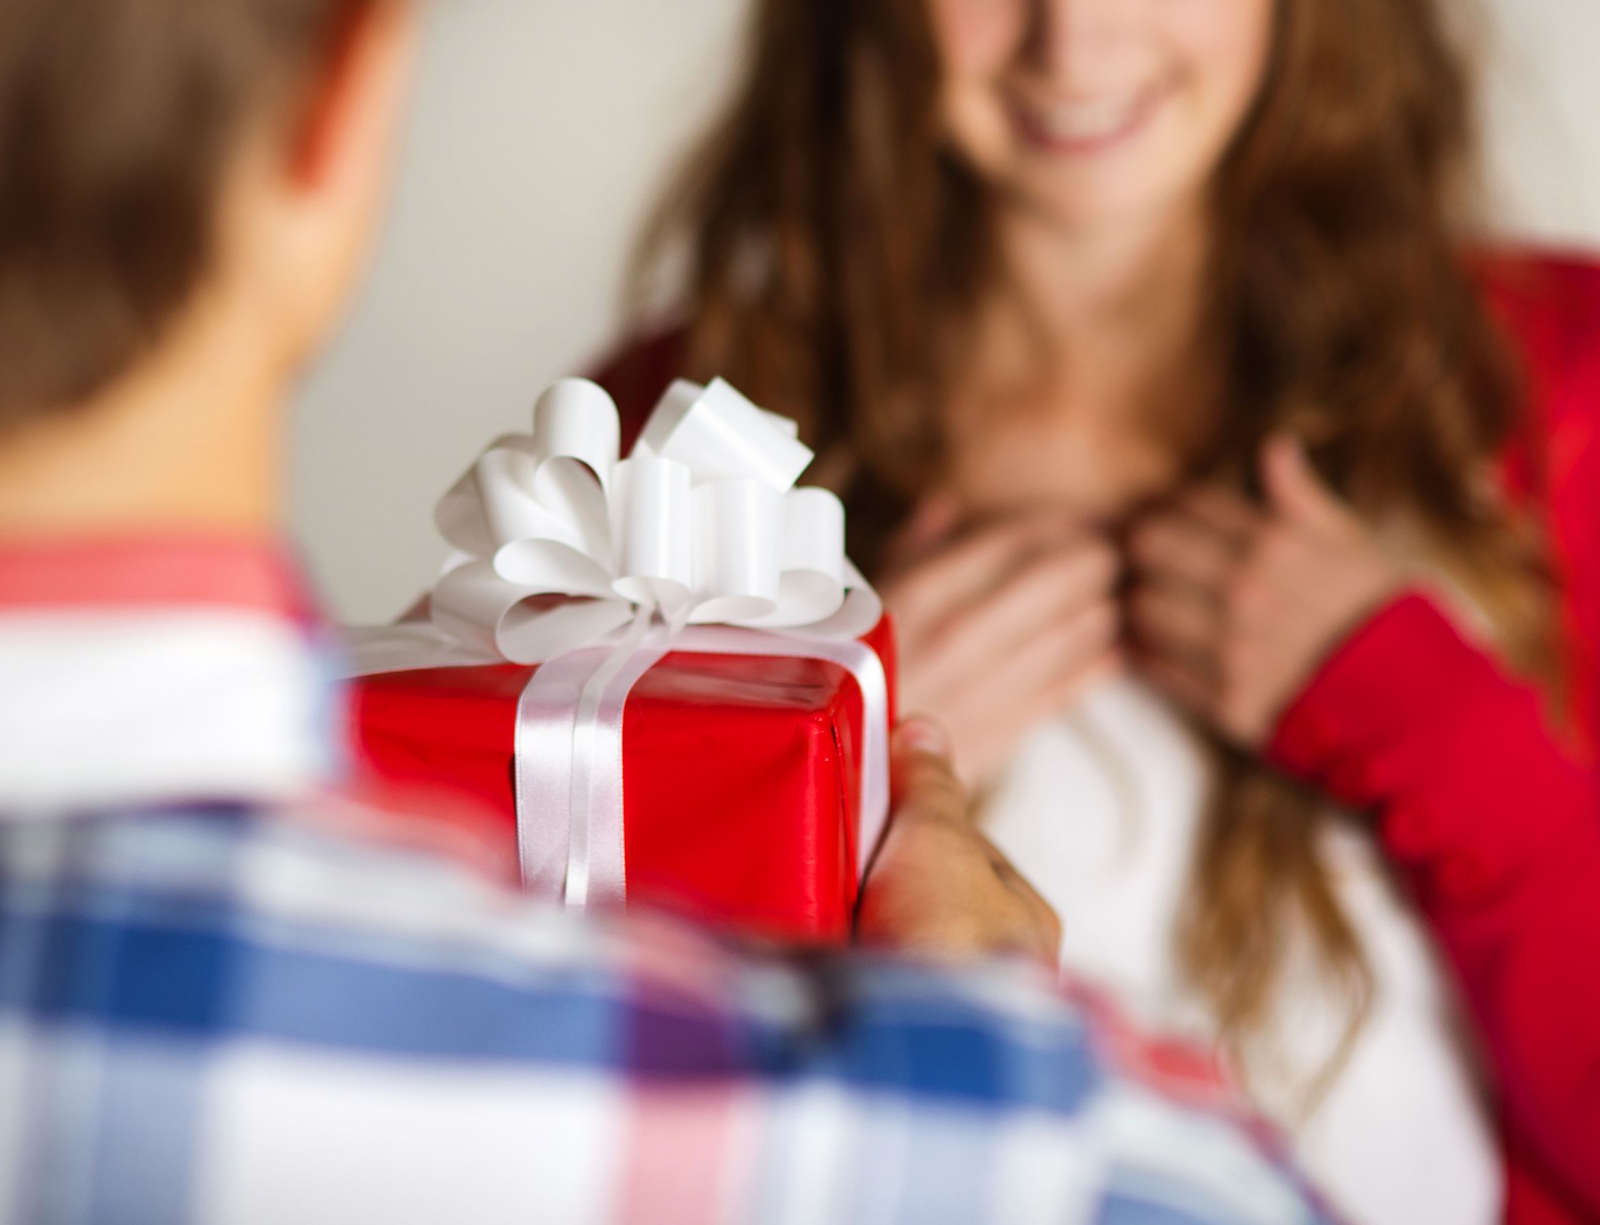 Подарок жене - 135 идеи как сделать стильный и оригинальный подарок для жены